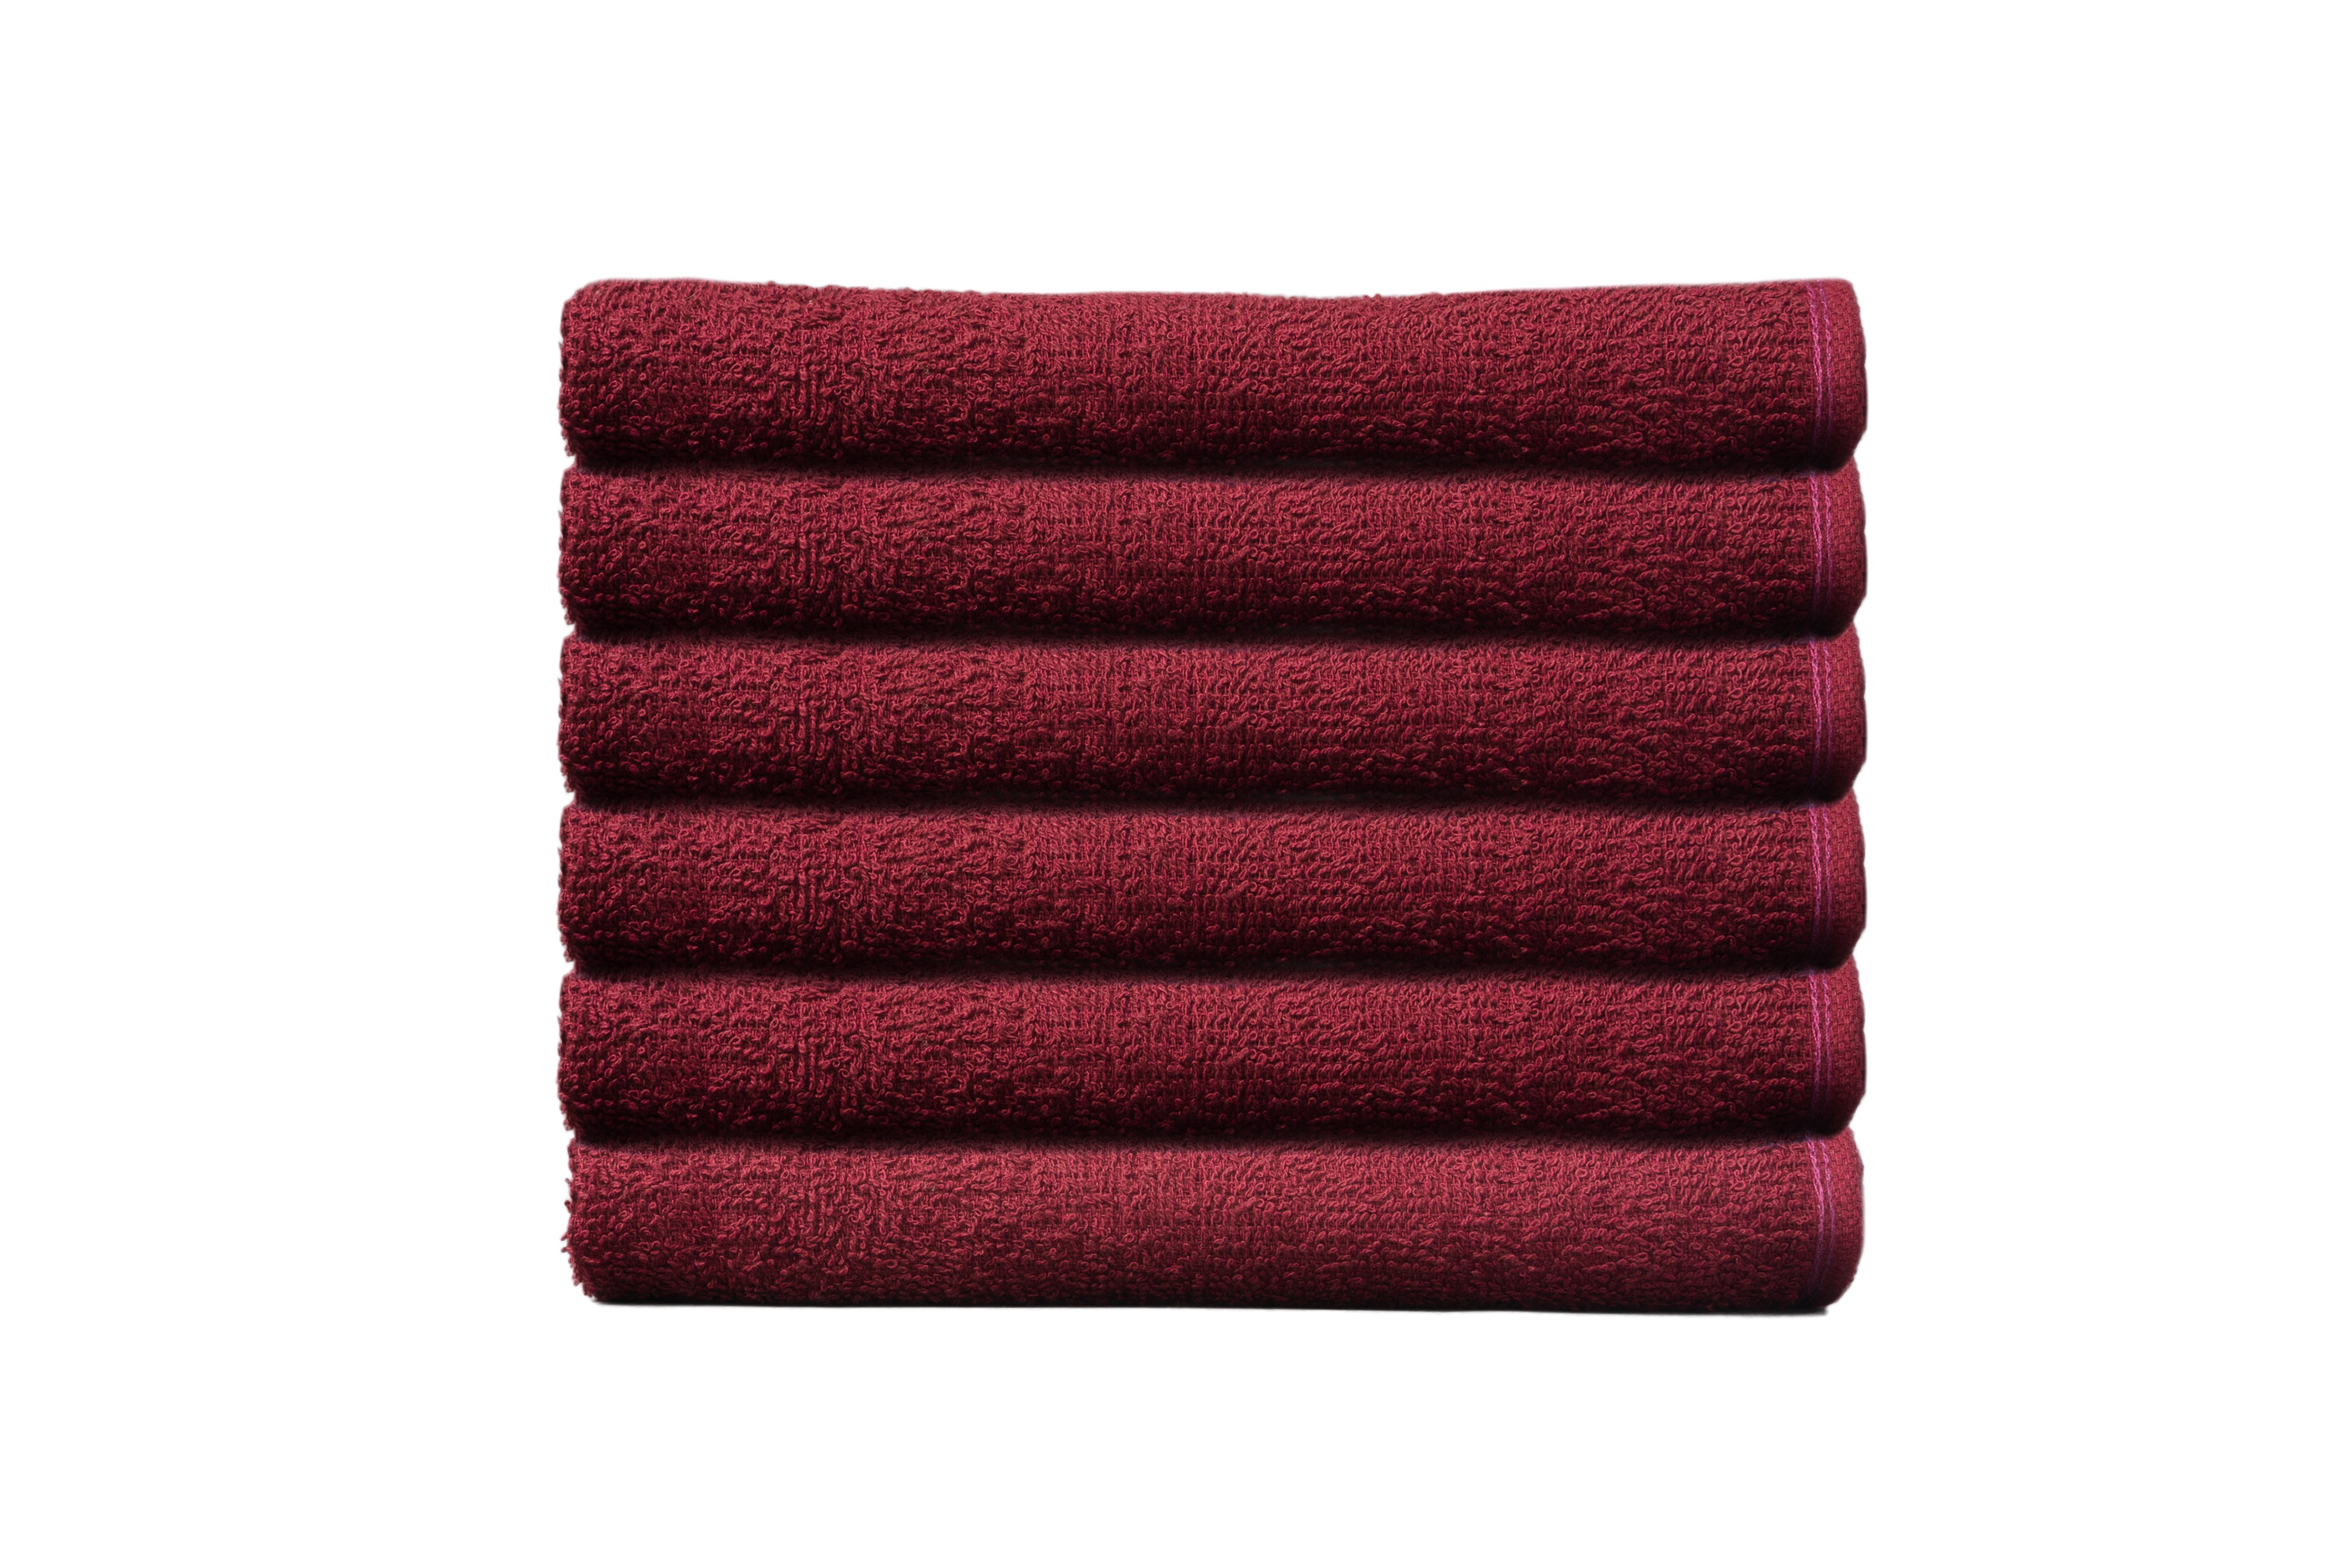 Partex Edge™ Towels